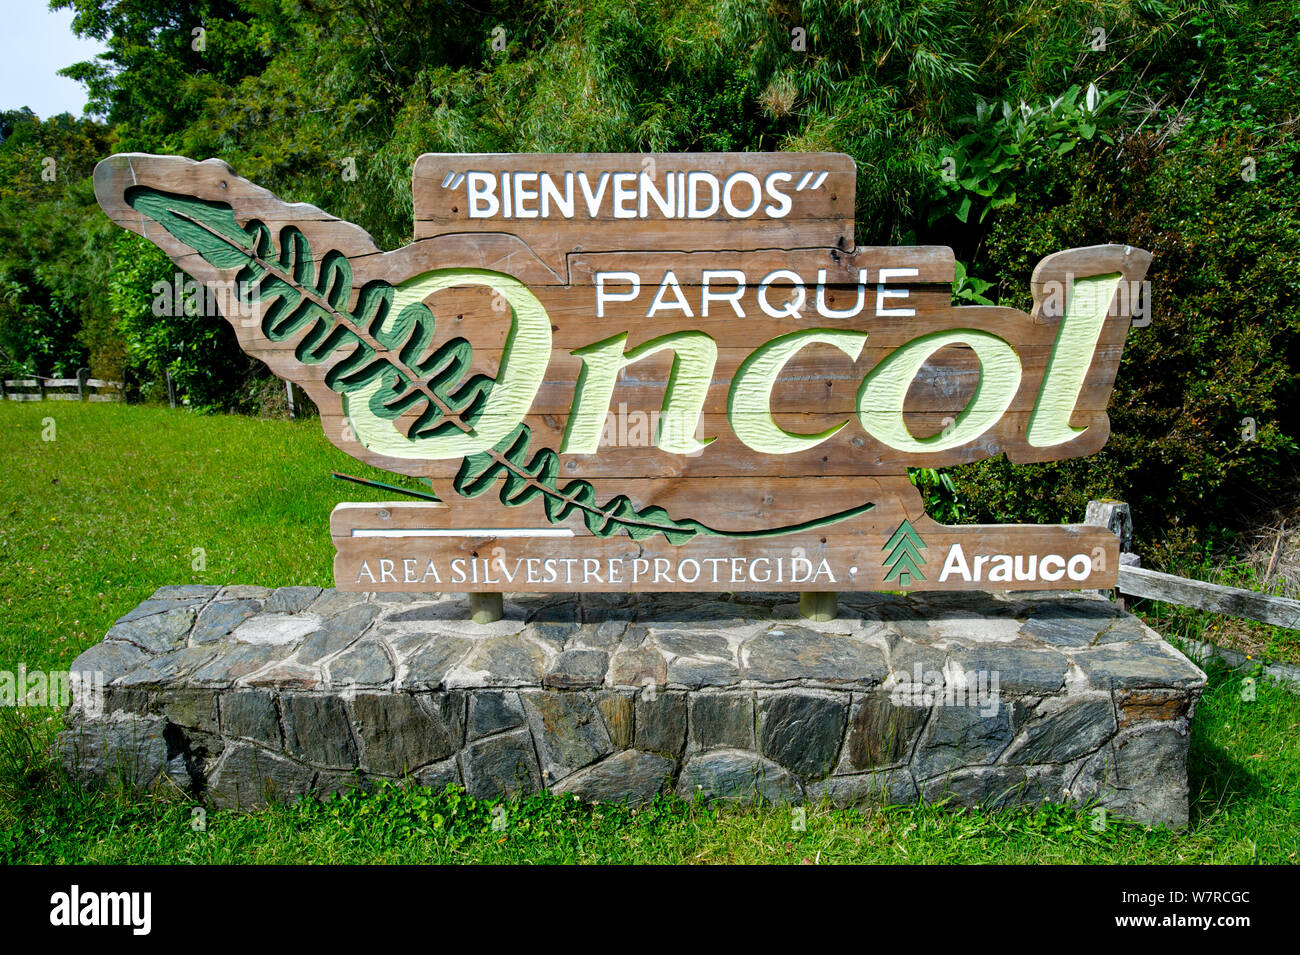 Entrada del Parque Oncol, Valdivia, Chile, enero de 2013 Foto de stock